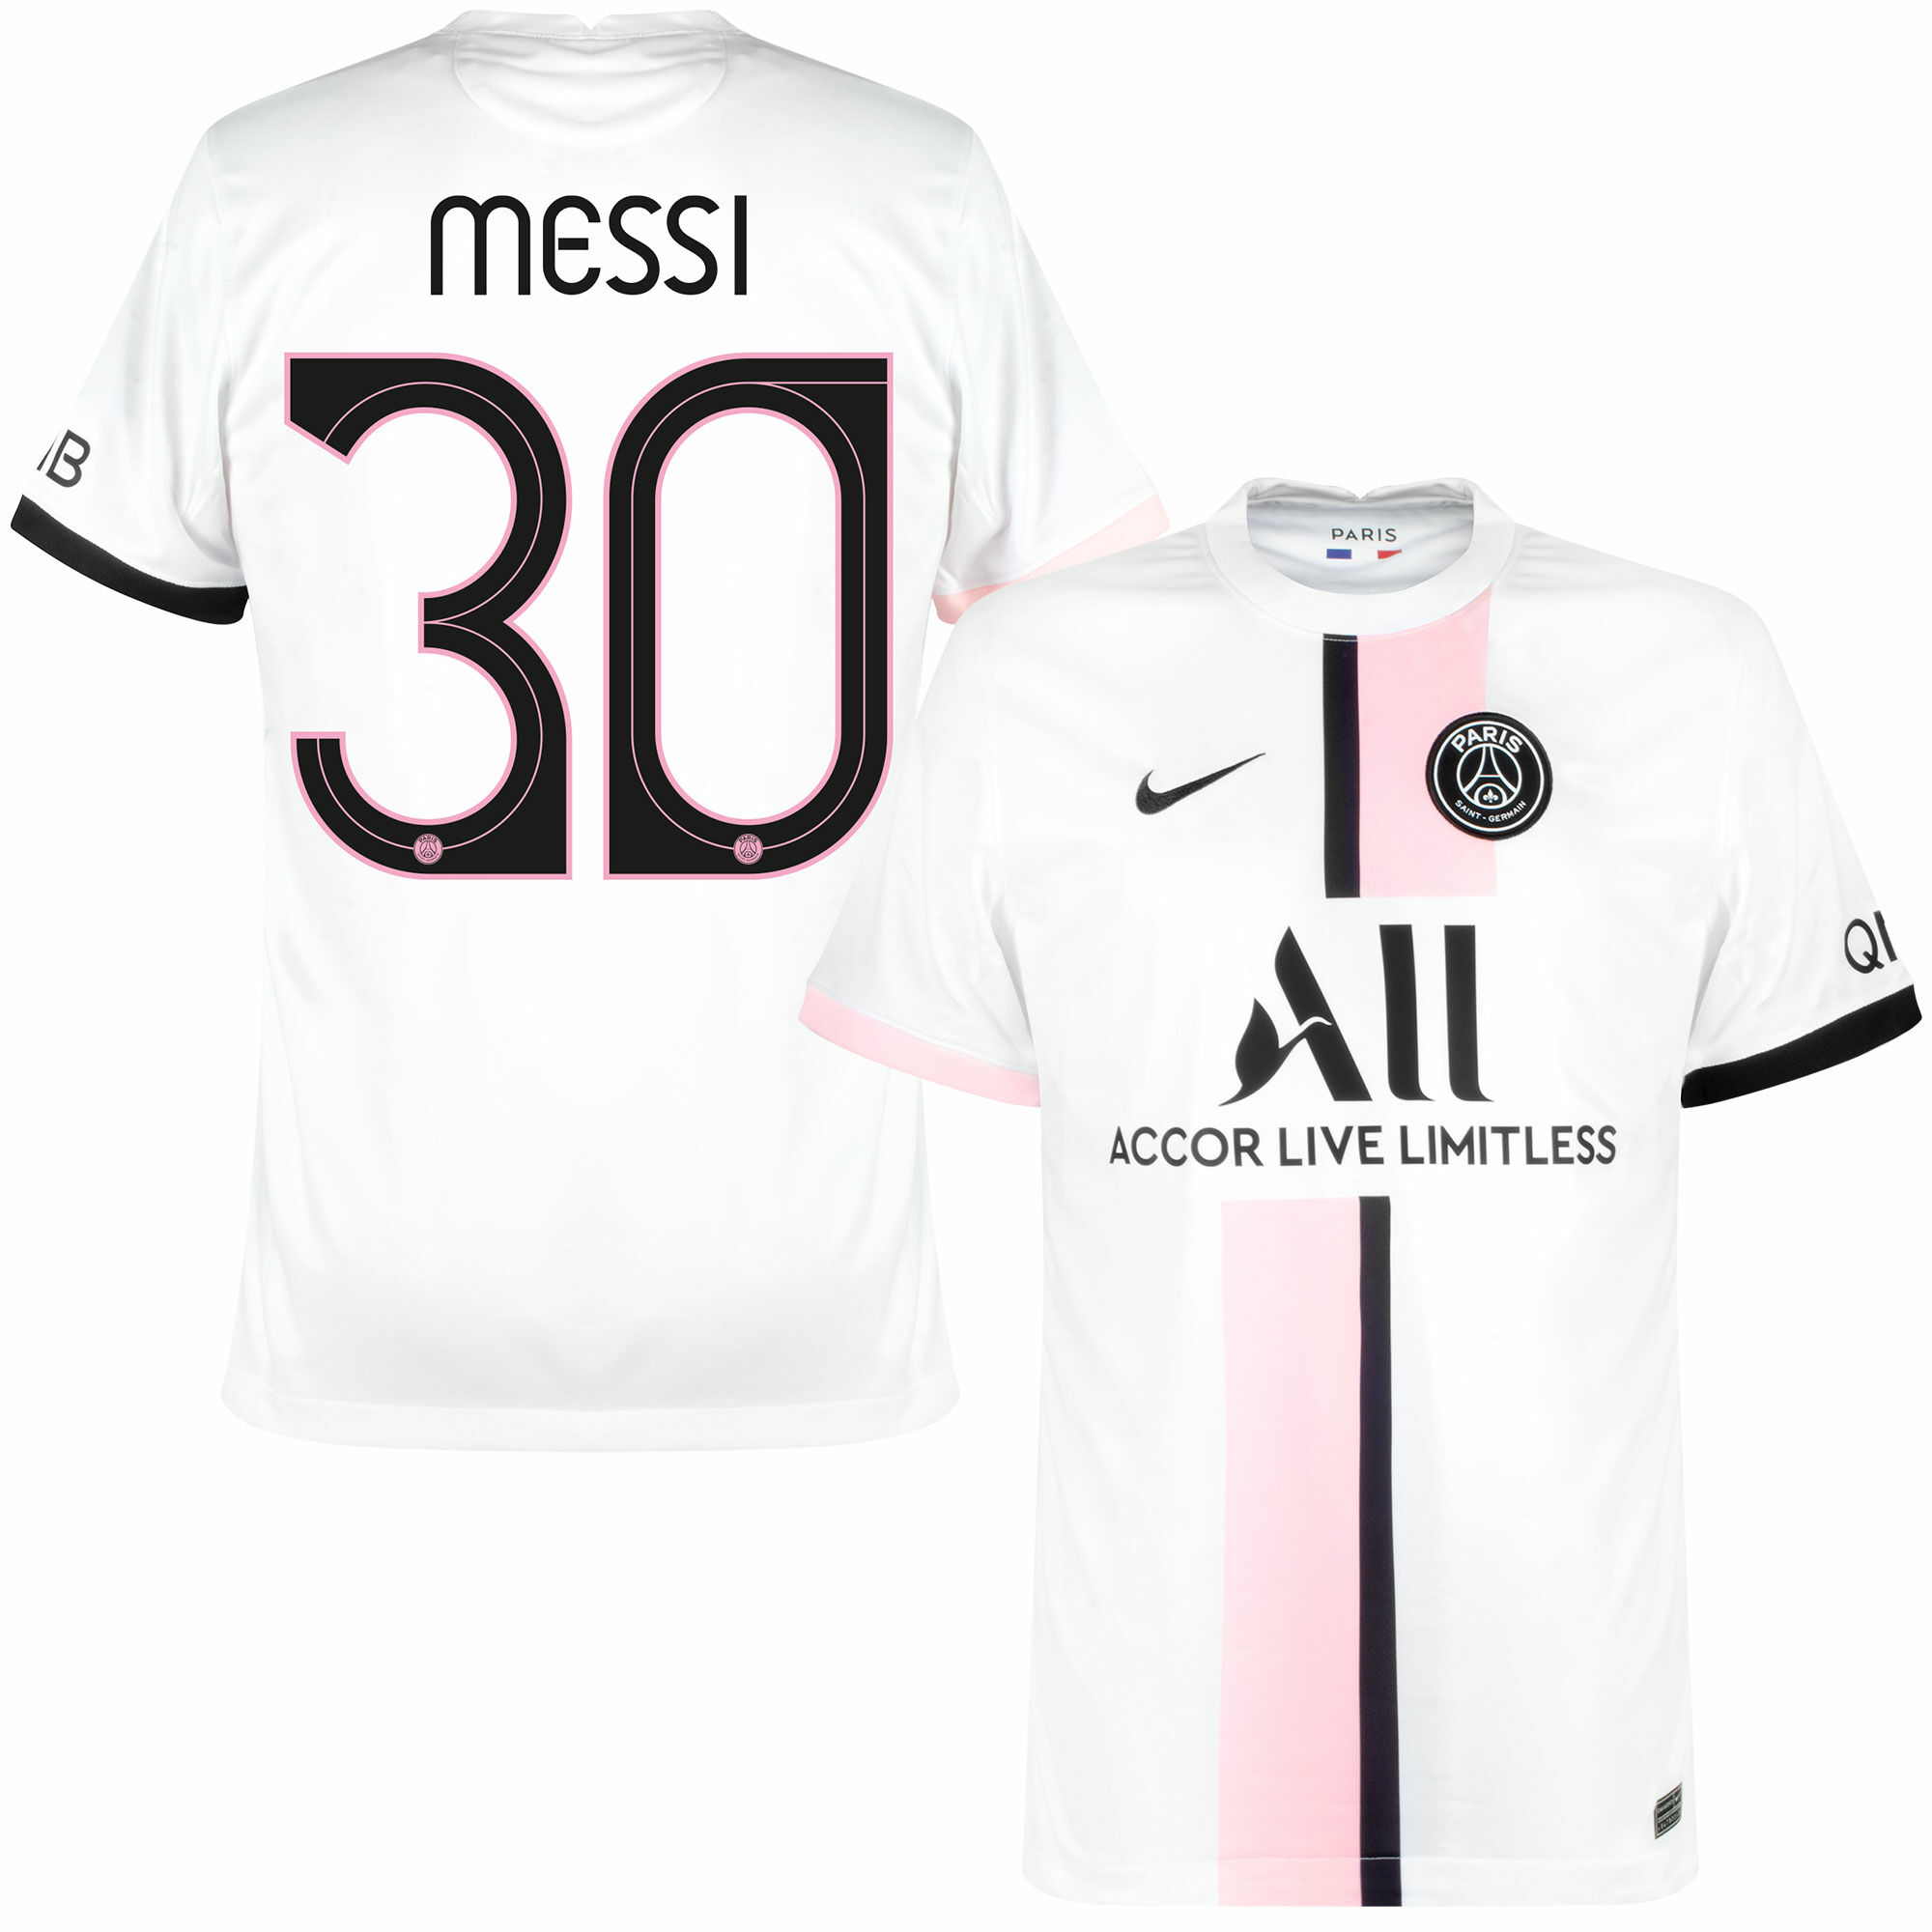 Paris Saint Germain - Dres fotbalový - číslo 30, oficiální potisk, sezóna 2021/22, bílý, Lionel Messi, venkovní